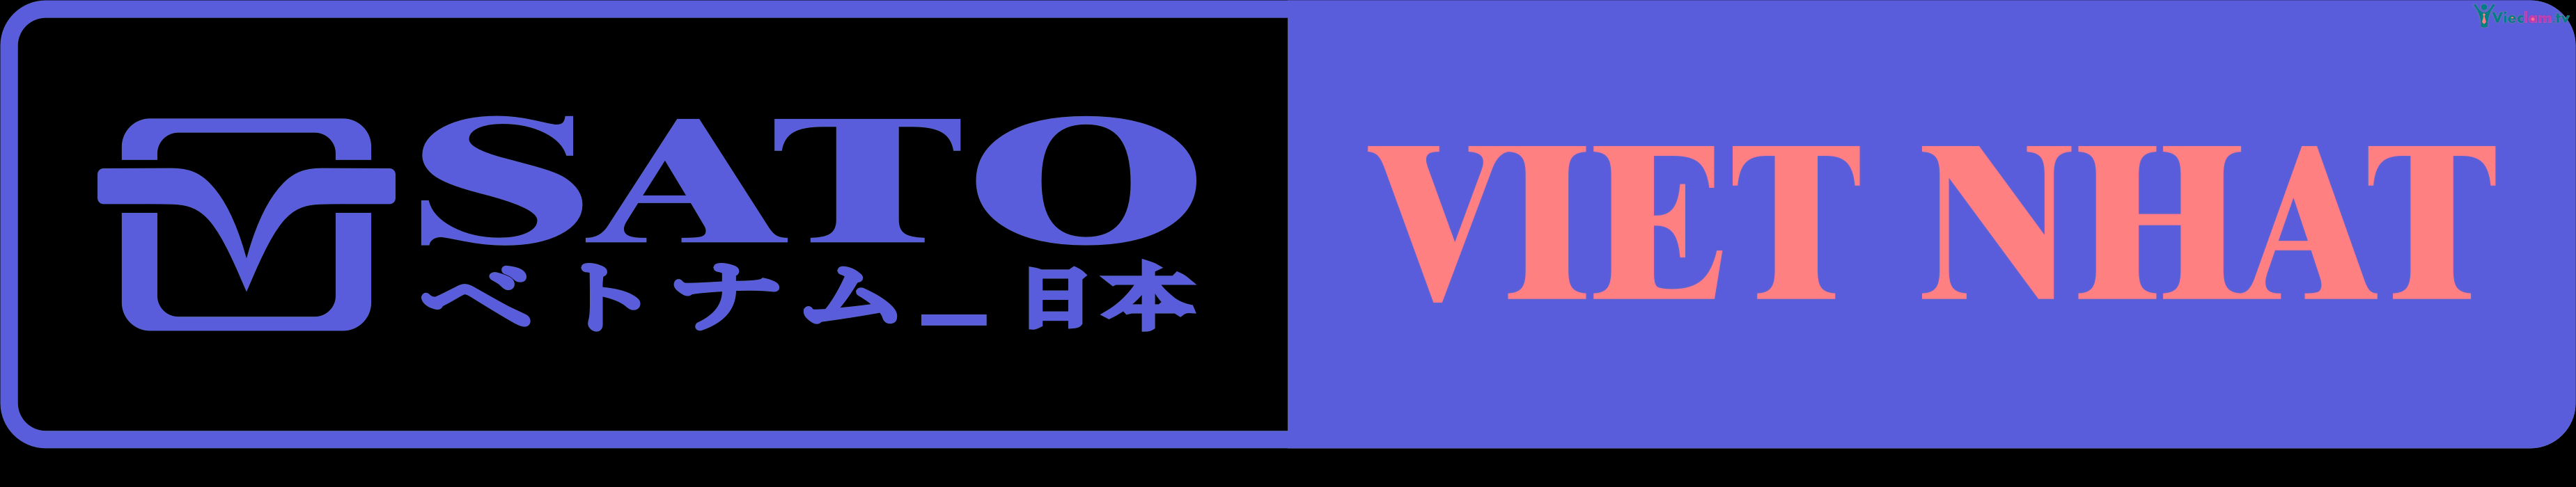 Logo Công ty TNHH Điện tử Việt Nhật